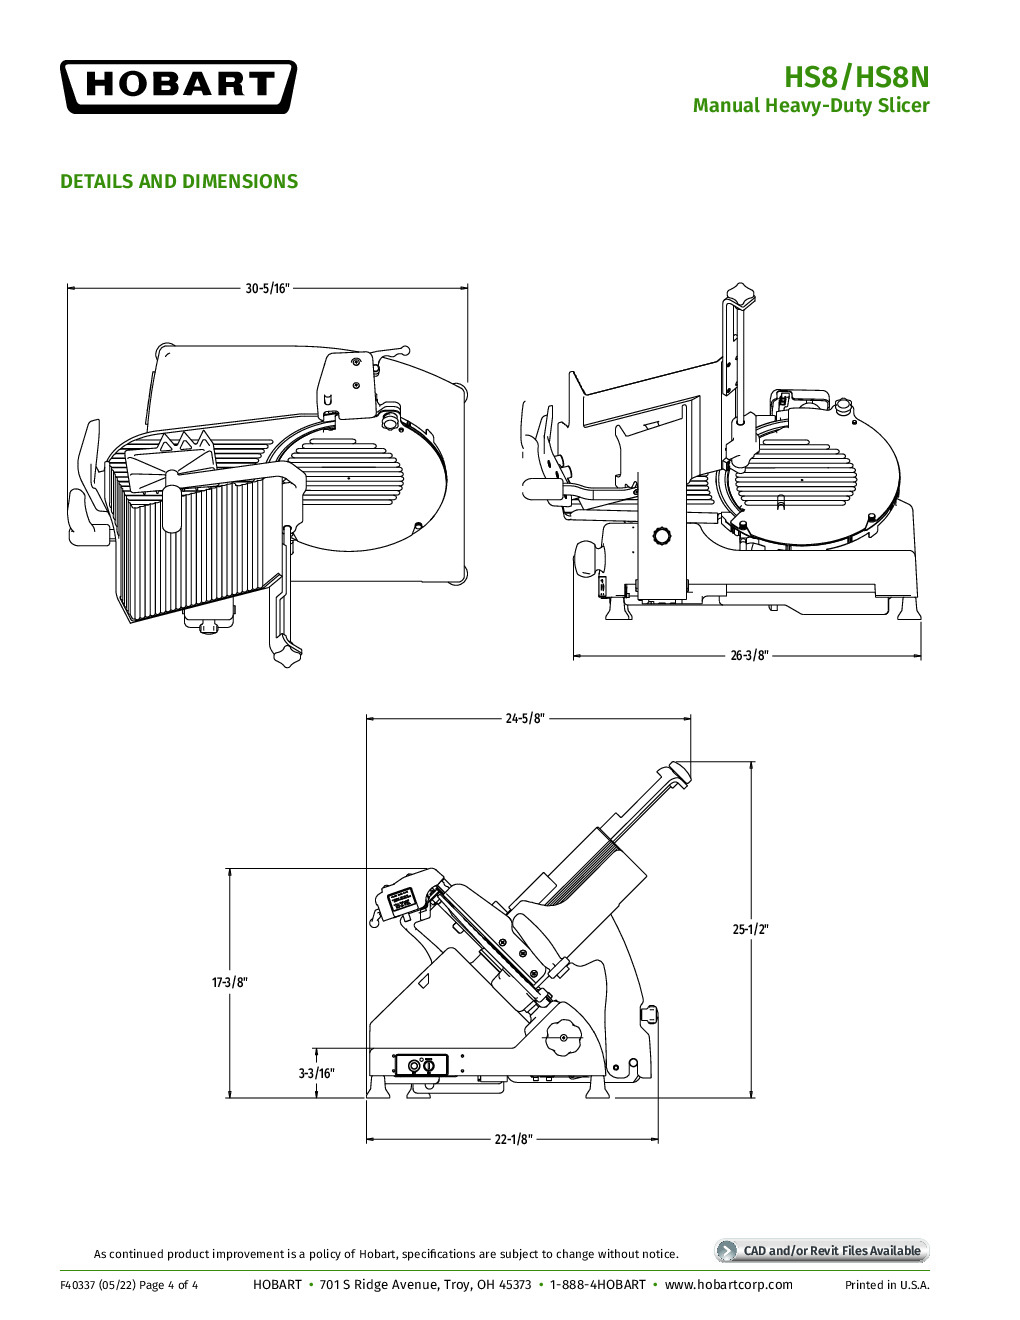 Hobart HS8N-HV50C High Voltage Manual Slicer with 13